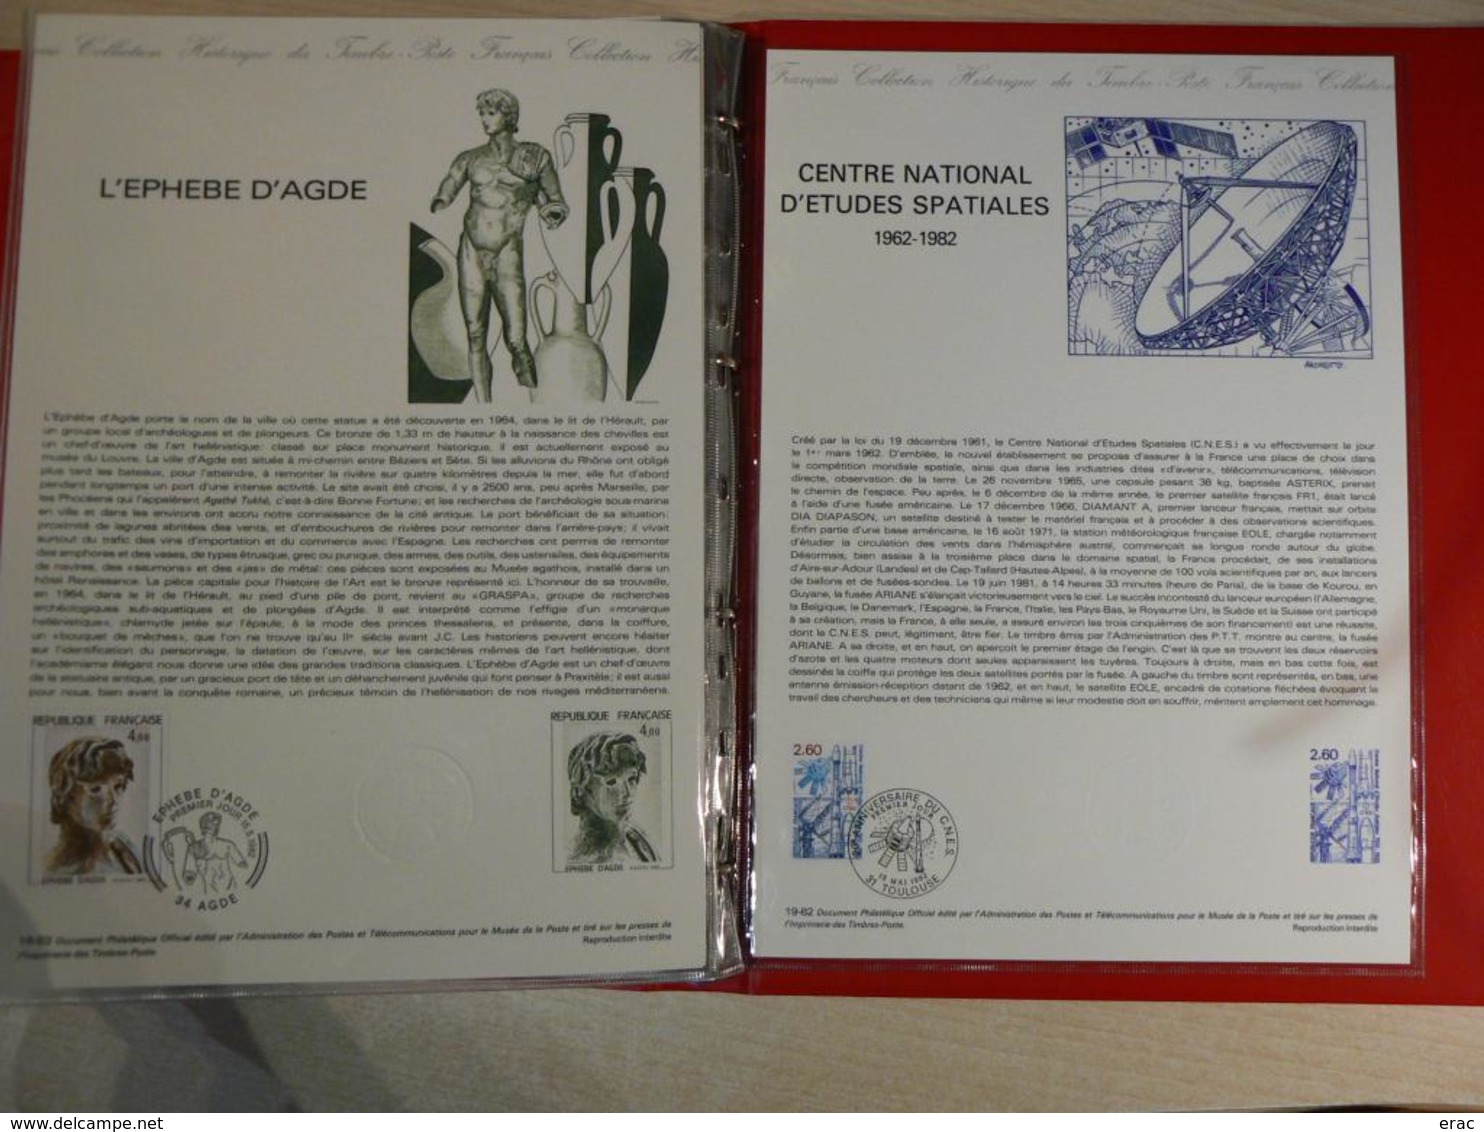 FRANCE - Documents Officiels de la Poste - 1982, 1983, 1984 - Trois classeurs